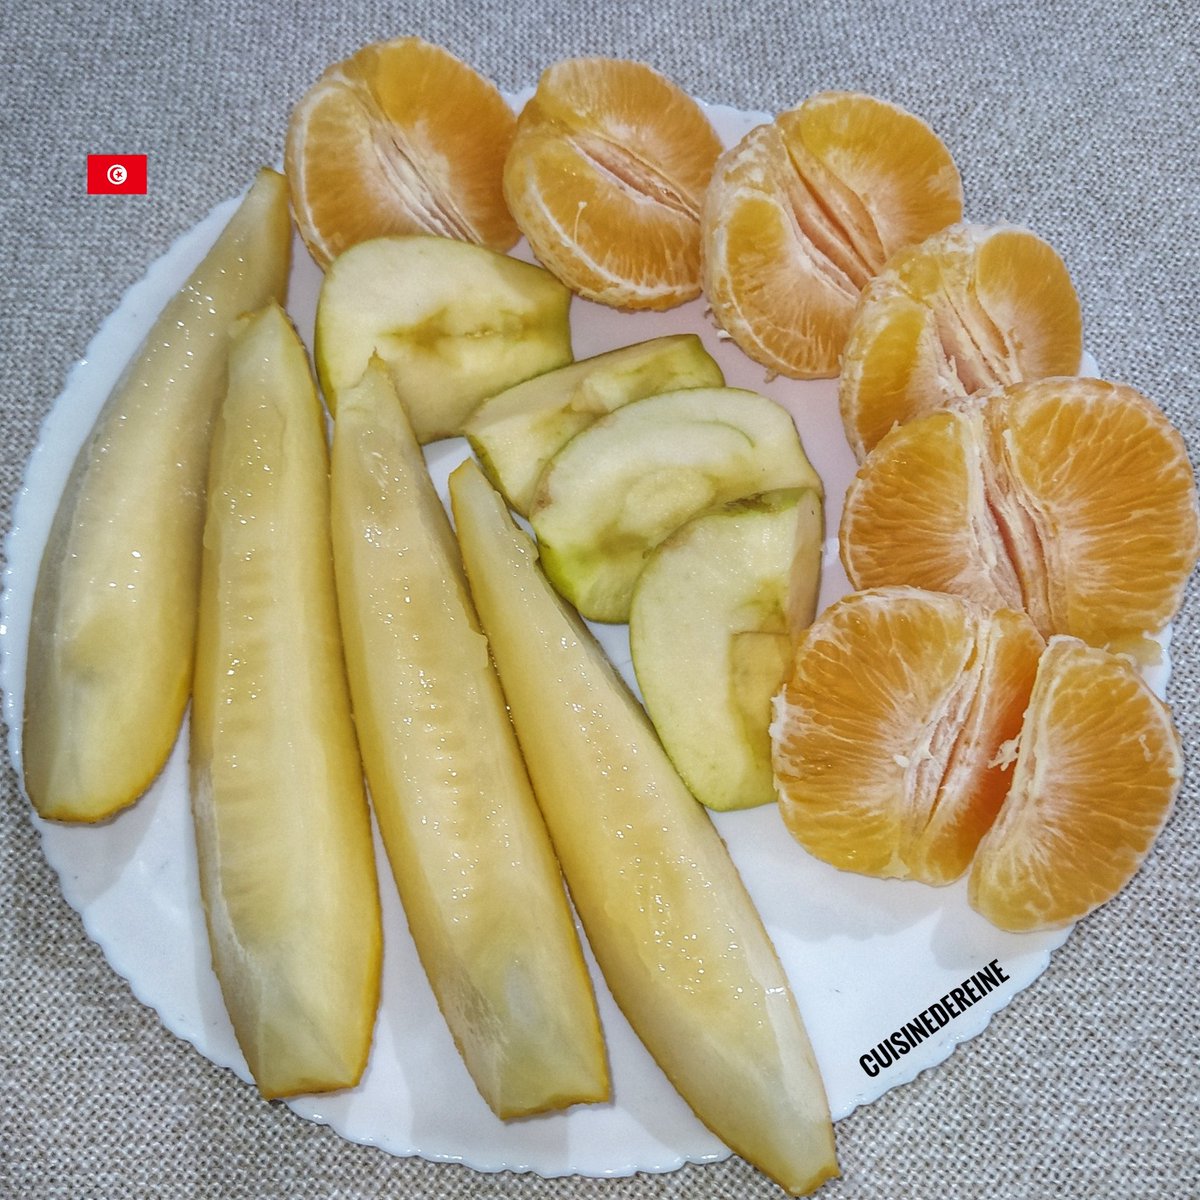 برتقال 🍊 - تفاح 🍏 - بطيخ (شمام) 🍈 #Fruit #Food #Tunisia